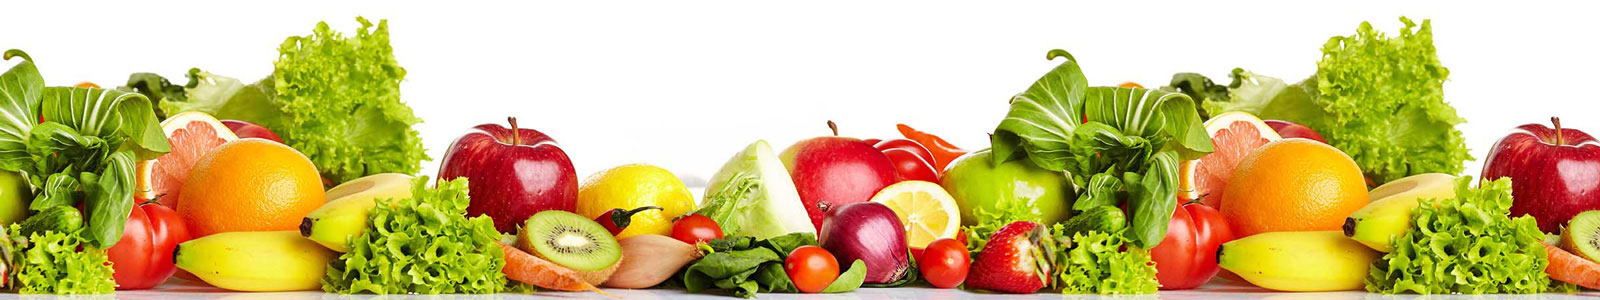 №3621 - Свежие фрукты и овощи на белом фоне